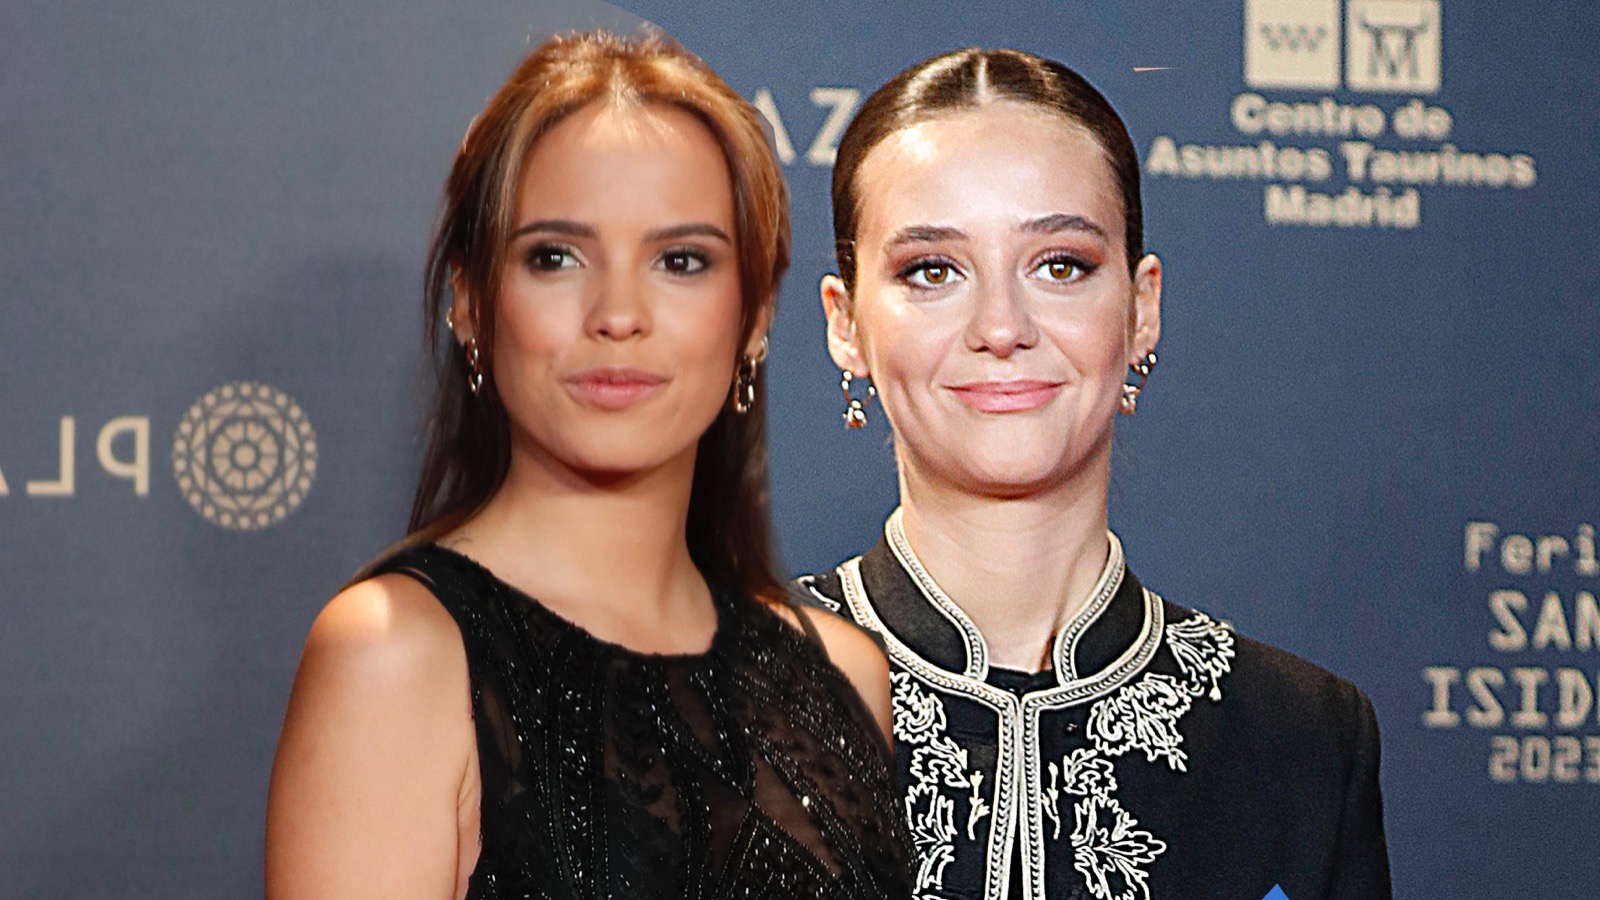 Gloria Camila y Victoria Federica compiten con sus looks de gala en las Ventas